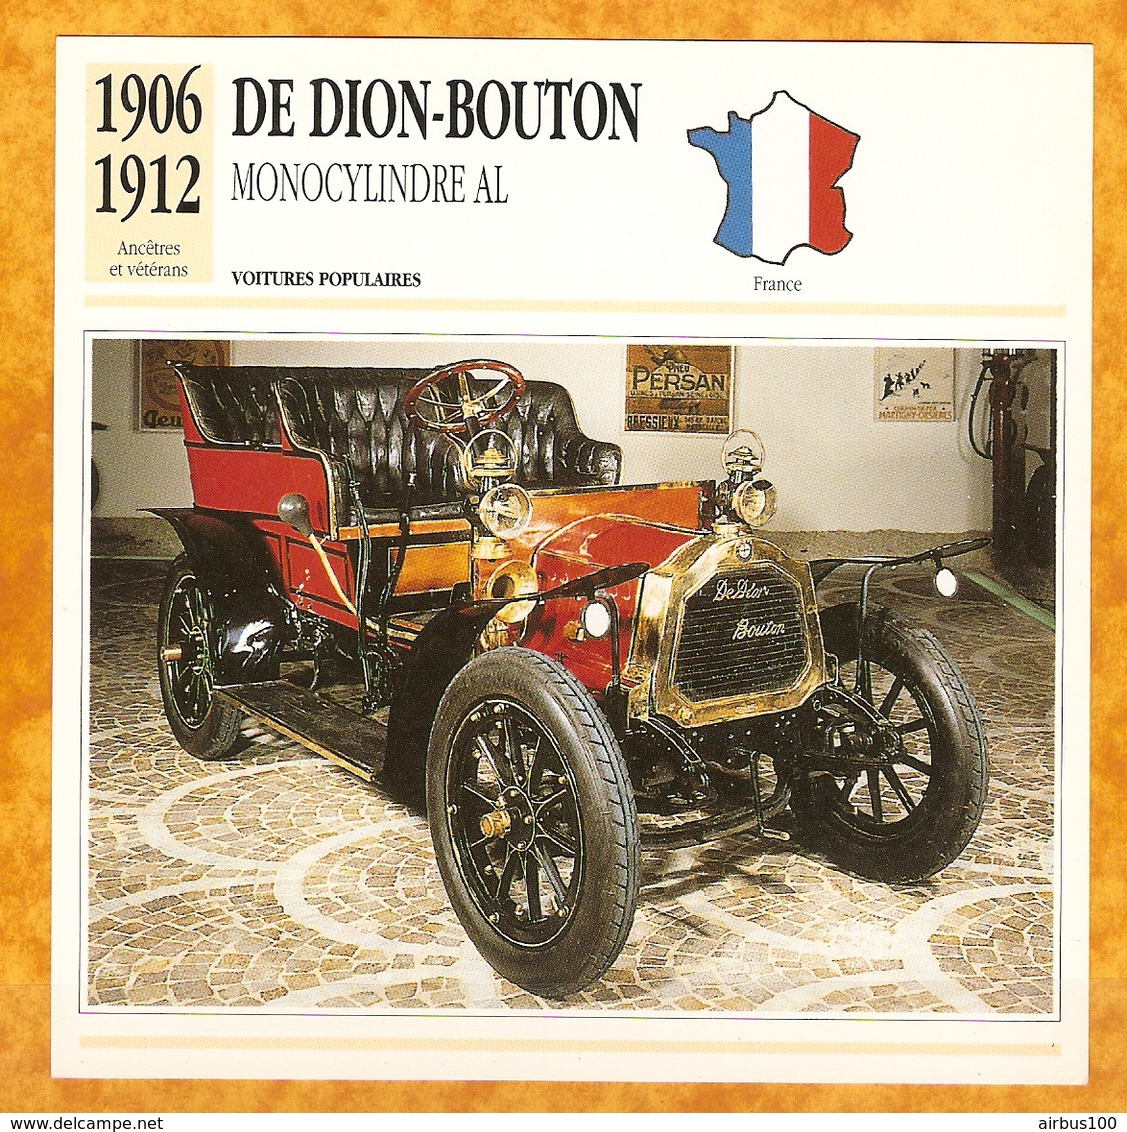 1906 FRANCE VIEILLE VOITURE DE DION BOUTON MONOCYLINDRE AL - FRANCE OLD CAR - FRANCIA VIEJO COCHE - VECCHIA MACCHINA - Automobili